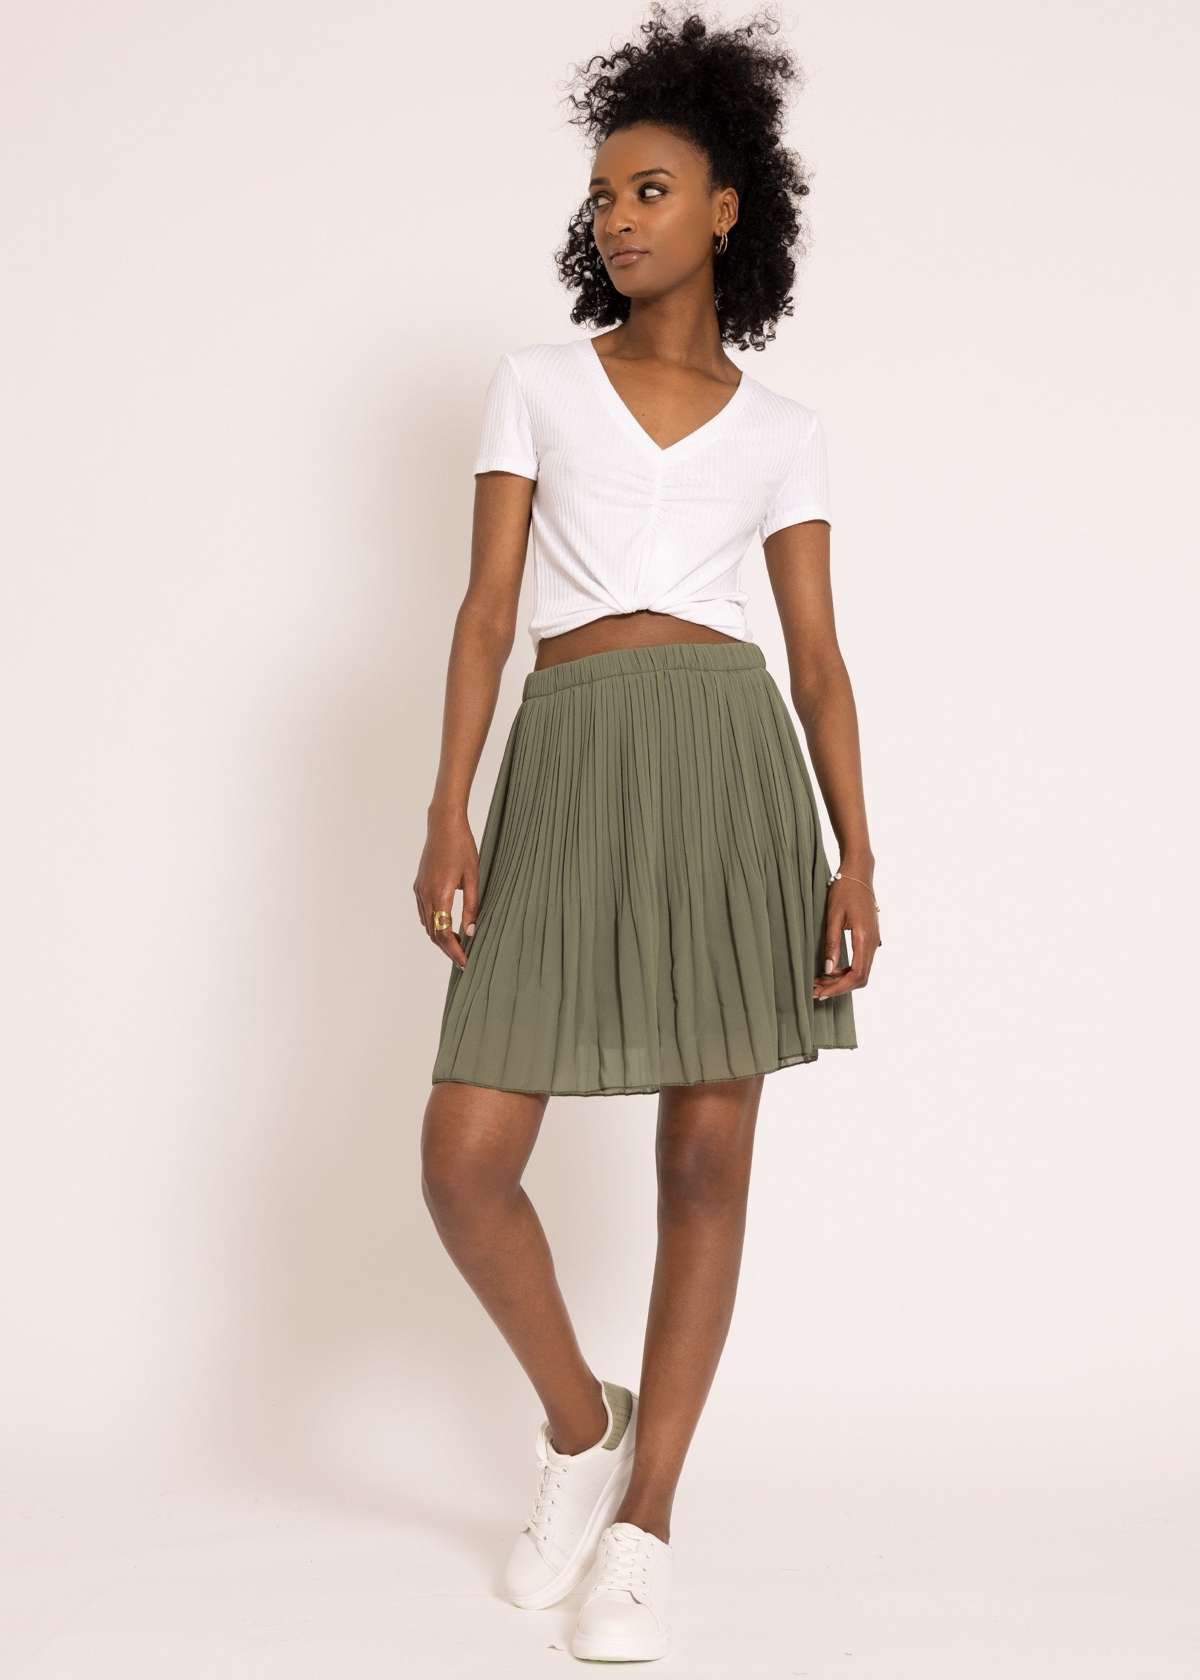 Плиссированная юбка мини-юбка женская со складками и эластичным поясом Юбка-трапеция короткая с нижней юбкой